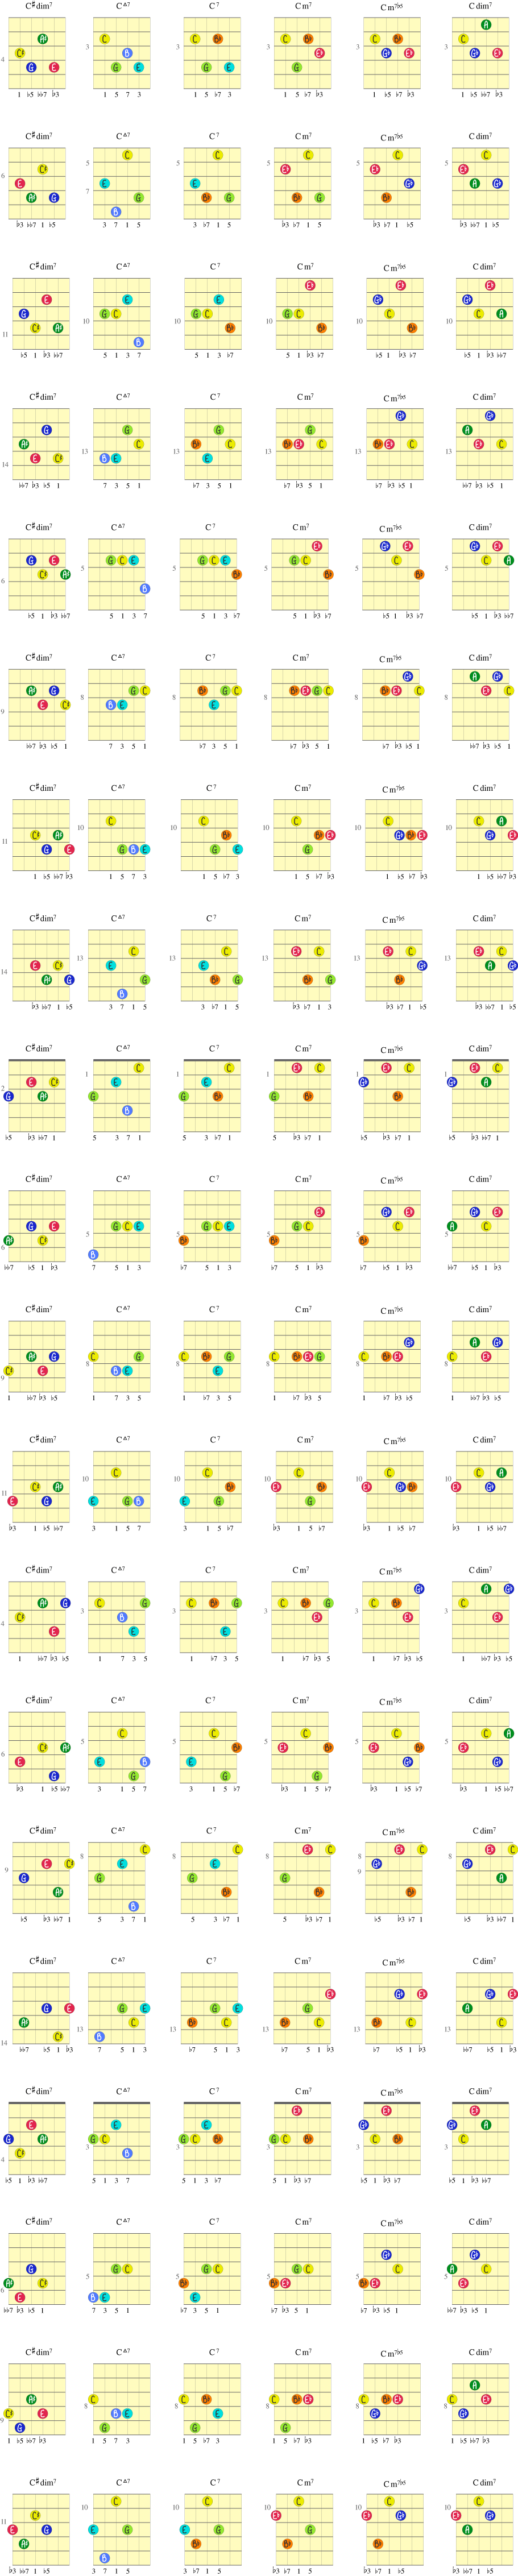 Øvelse på gitargrep fra C#dim7 til Cmaj7 til C7 til Cm7 til Cm7b5 til Cdim7